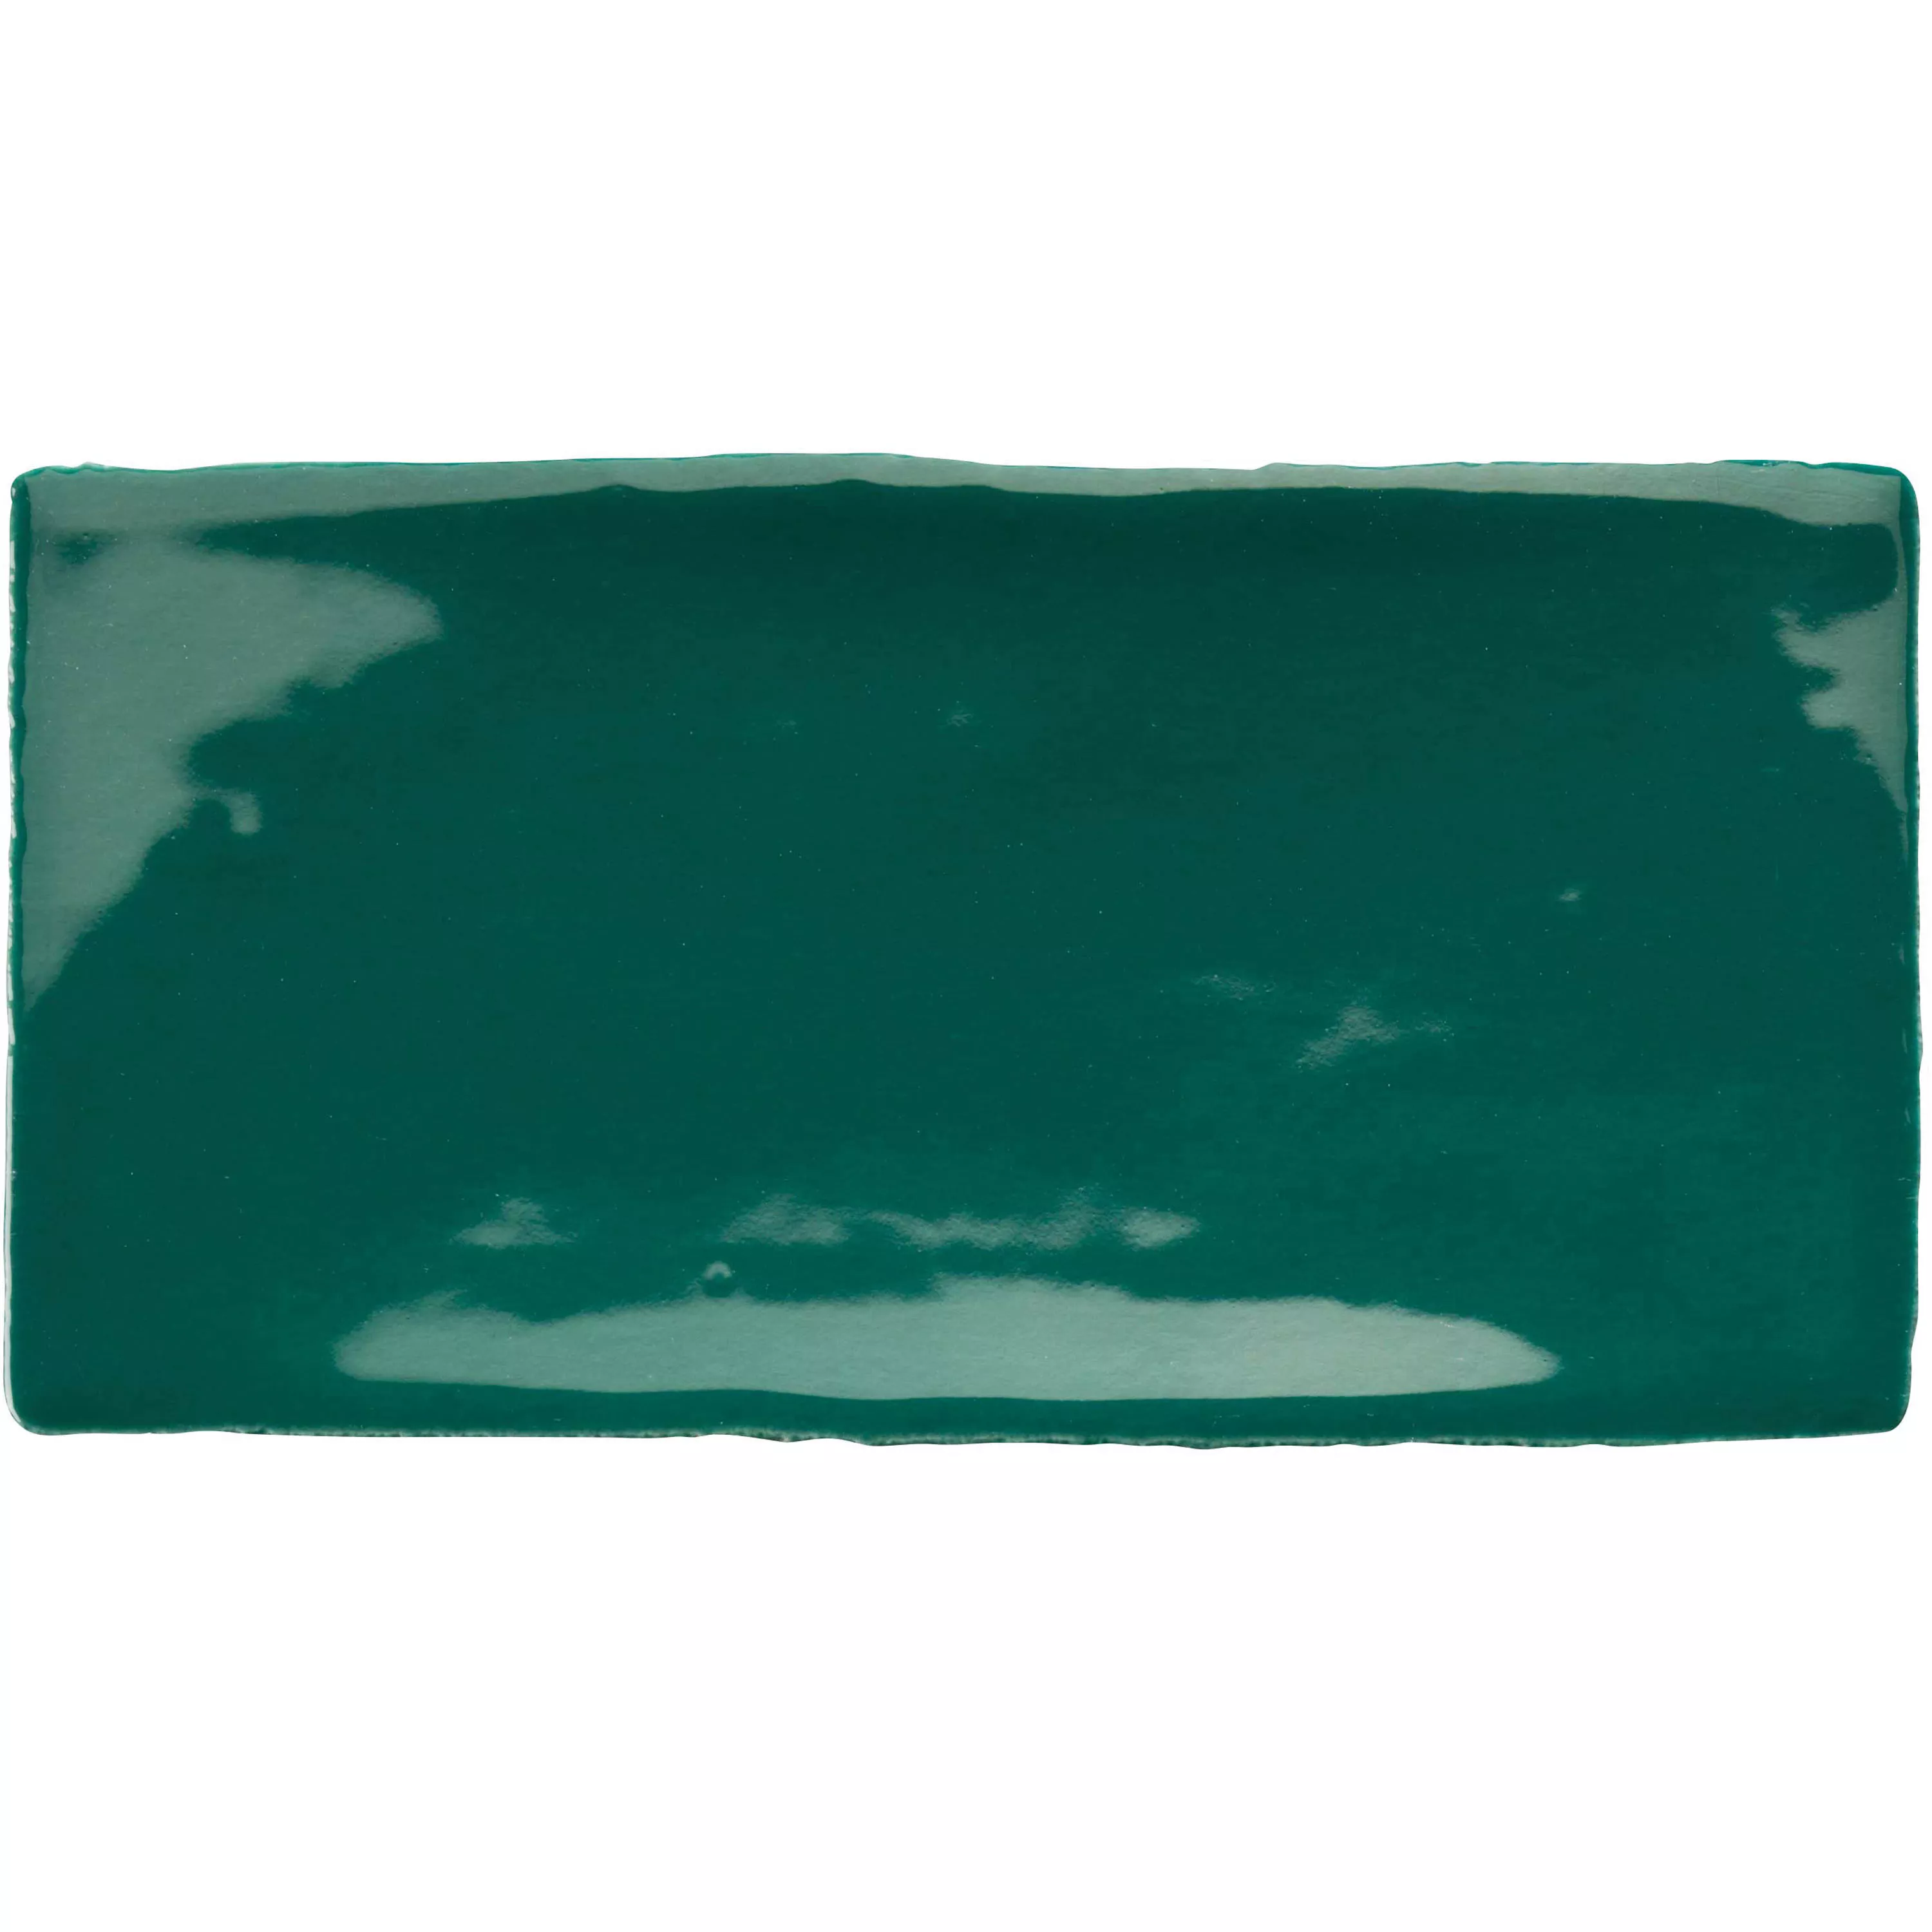 Azulejo Algier Feito à Mão 7,5x15cm Garrafa verde